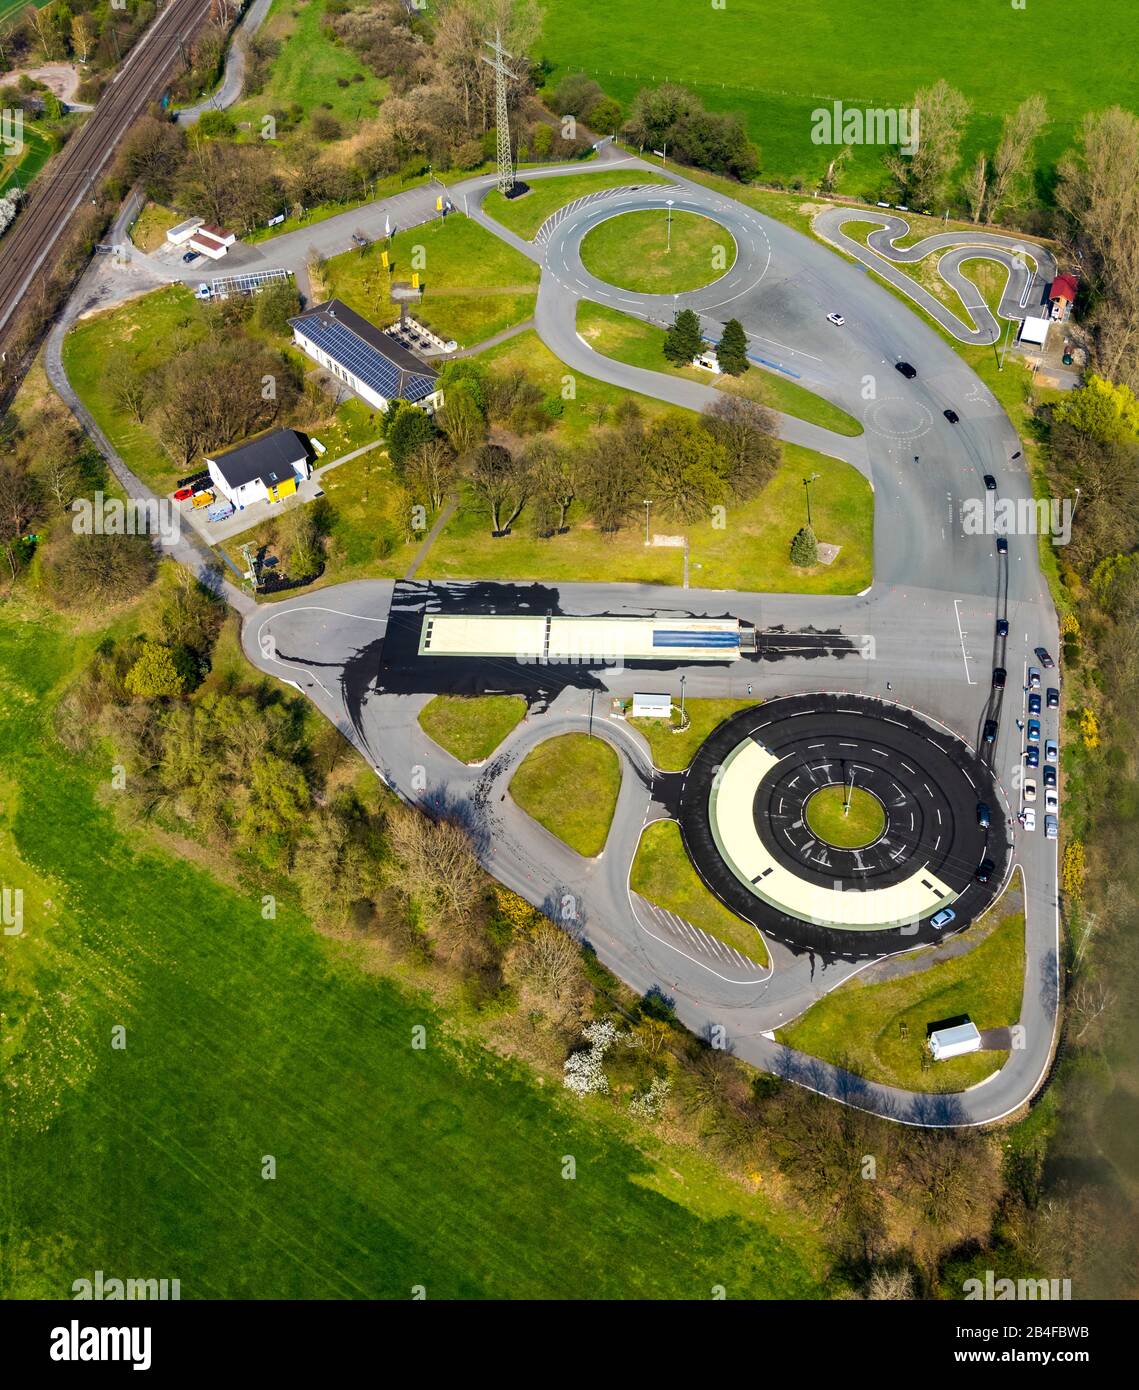 Vue aérienne du centre de sécurité routière de l'ADAC Haltern am See, cours de formation routière avec spin à Haltern am See dans la région de la Ruhr dans l'état de Rhénanie-du-Nord-Westphalie, Allemagne. Banque D'Images